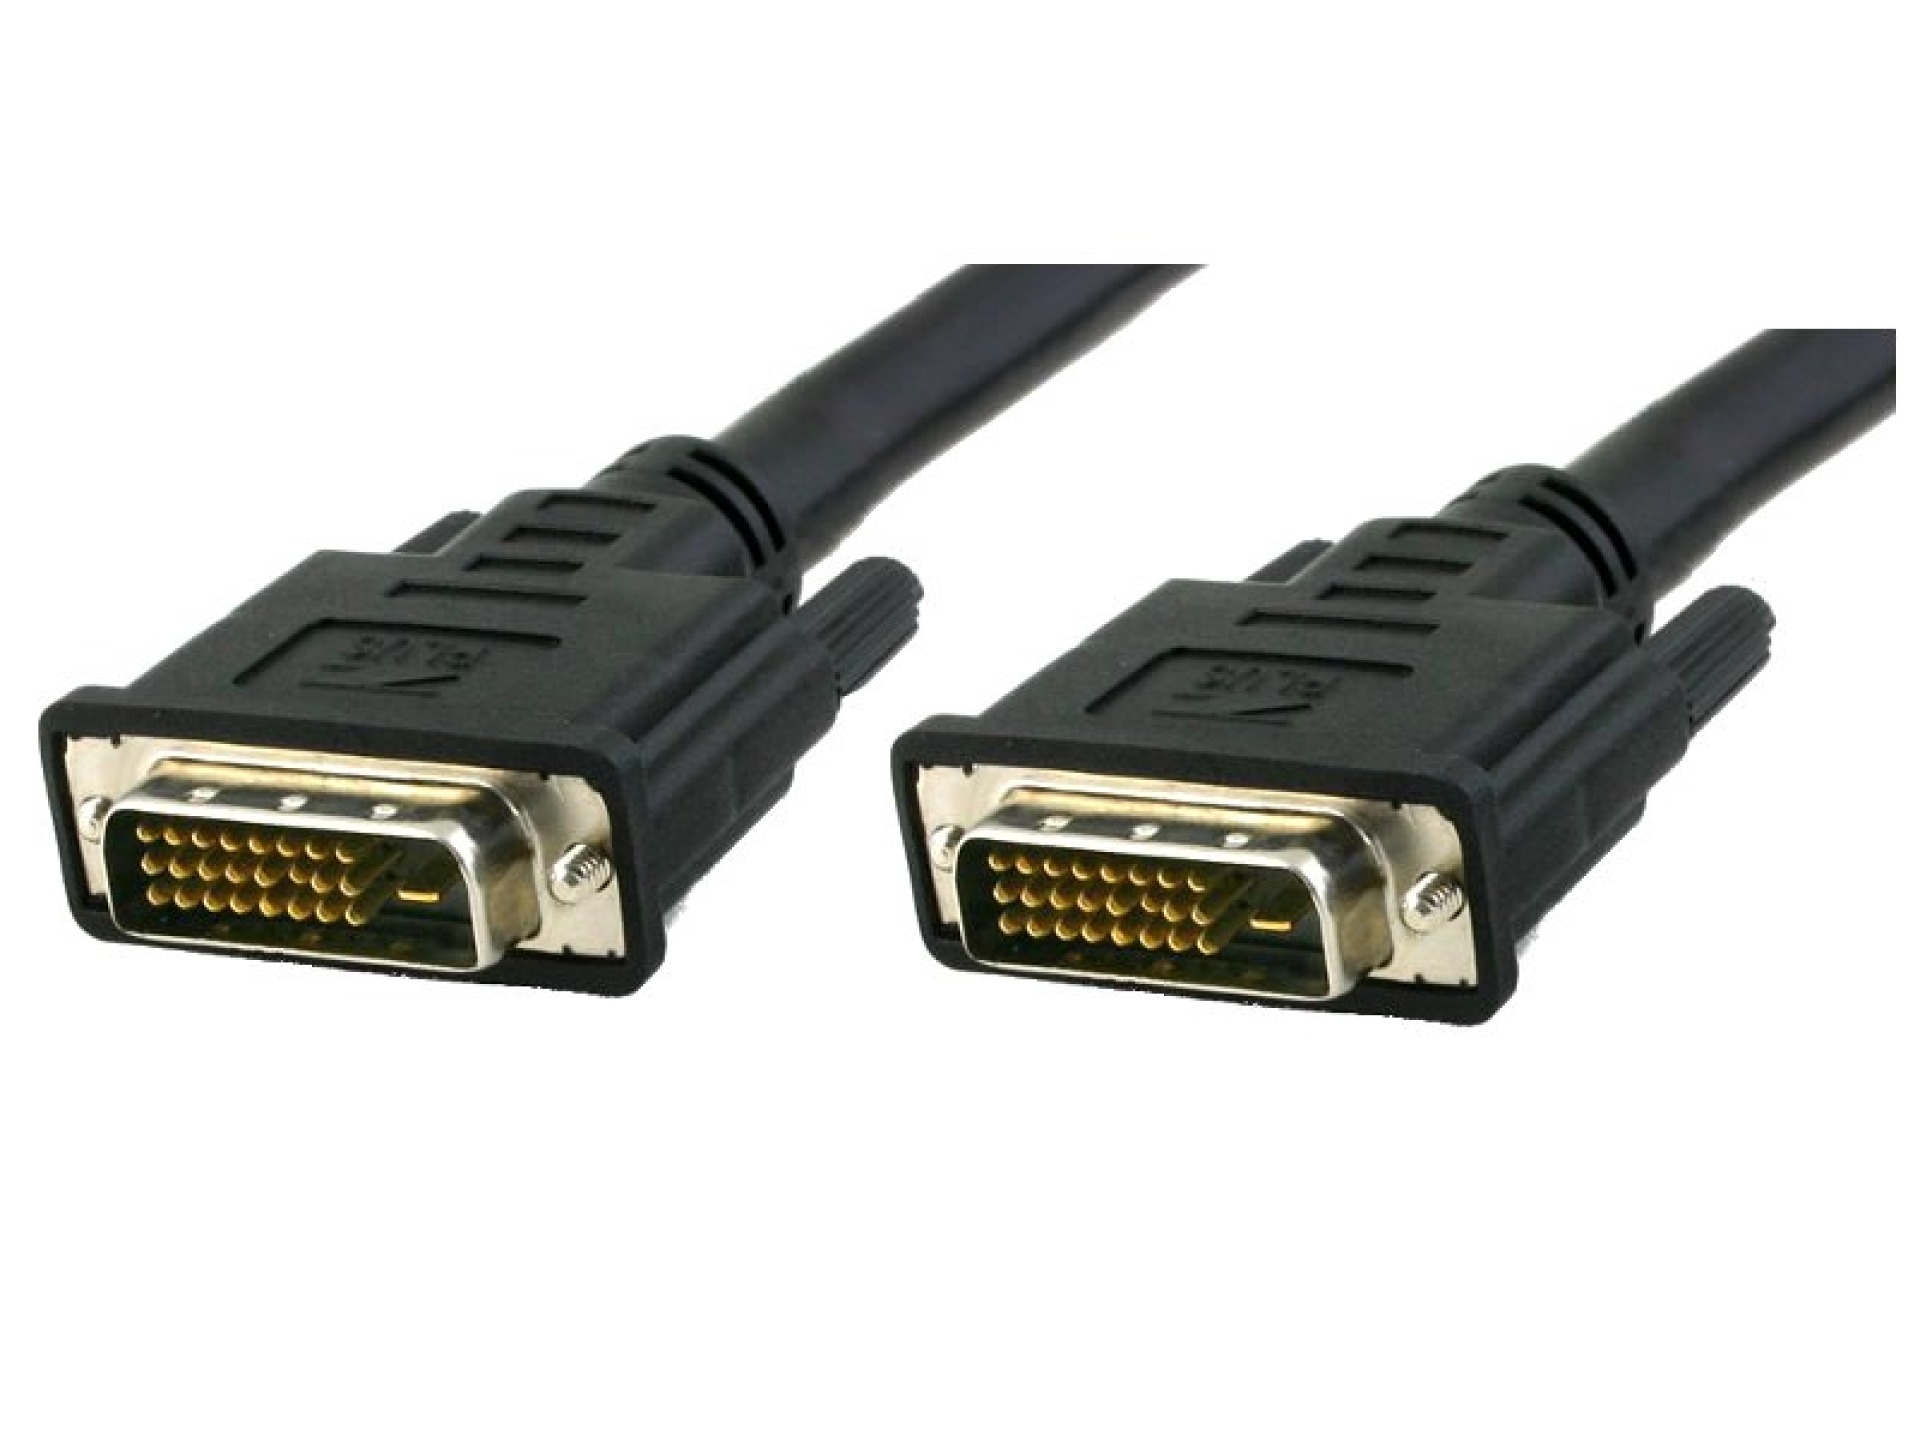 DVI-D Dual-Link Anschlusskabel Stecker/Stecker, schwarz, 5 m